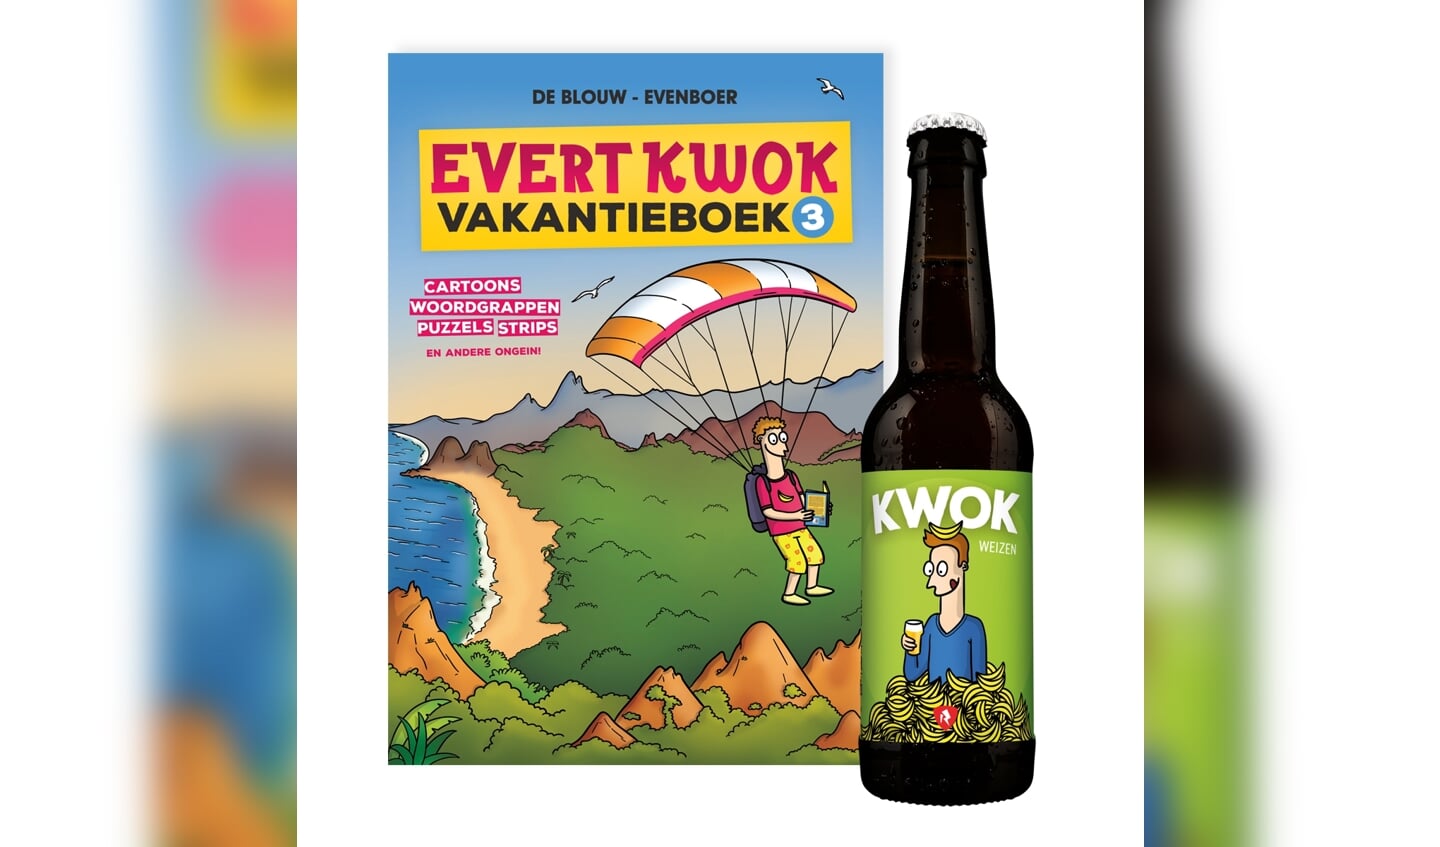 Evert Kwok Vakantieboek 3 en het KWOK biertje